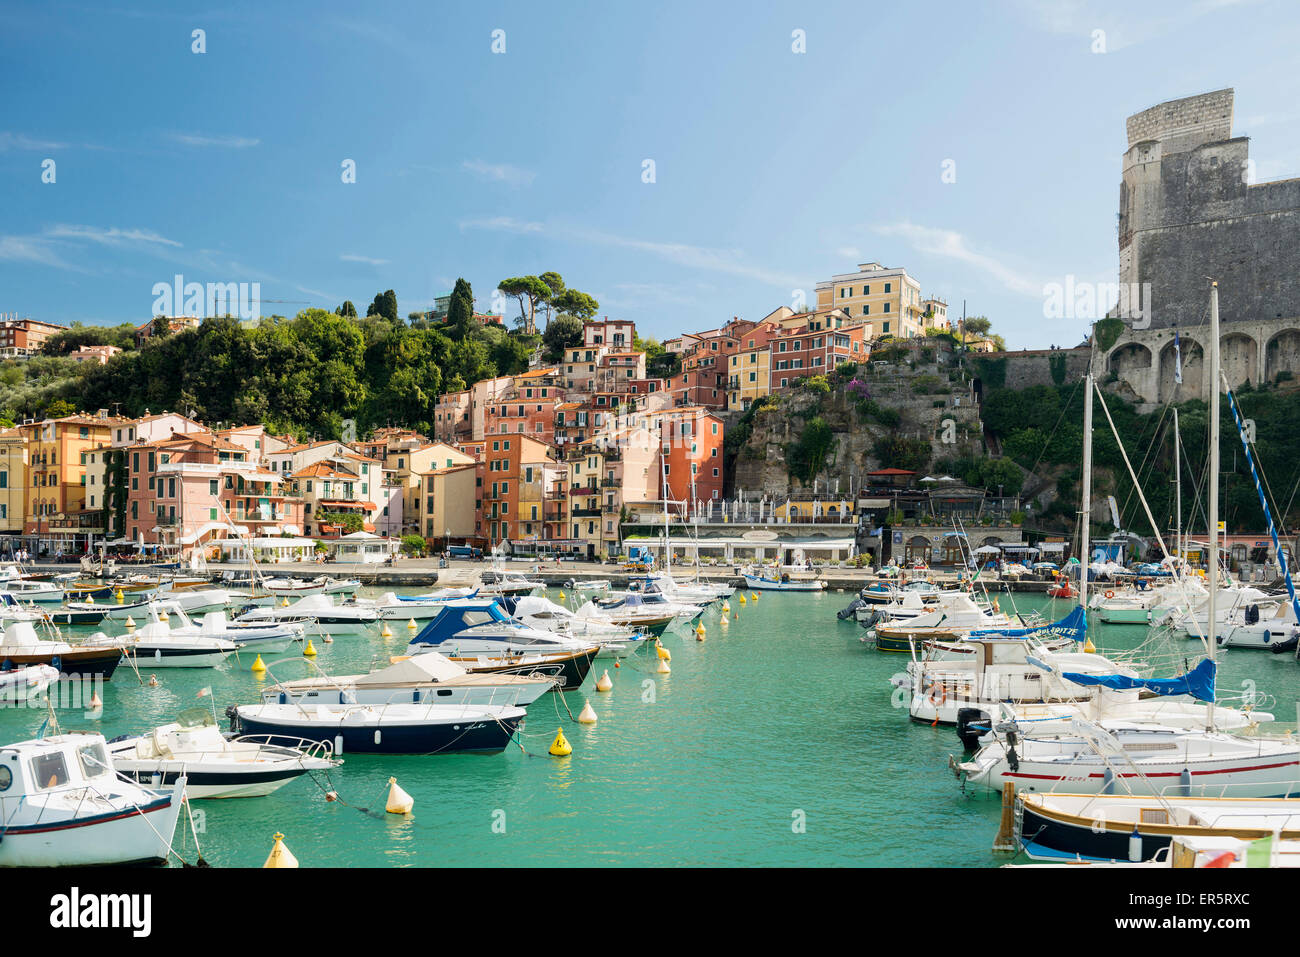 Marina and castle, Lerici, province of La Spezia, Liguria, Italia Stock Photo